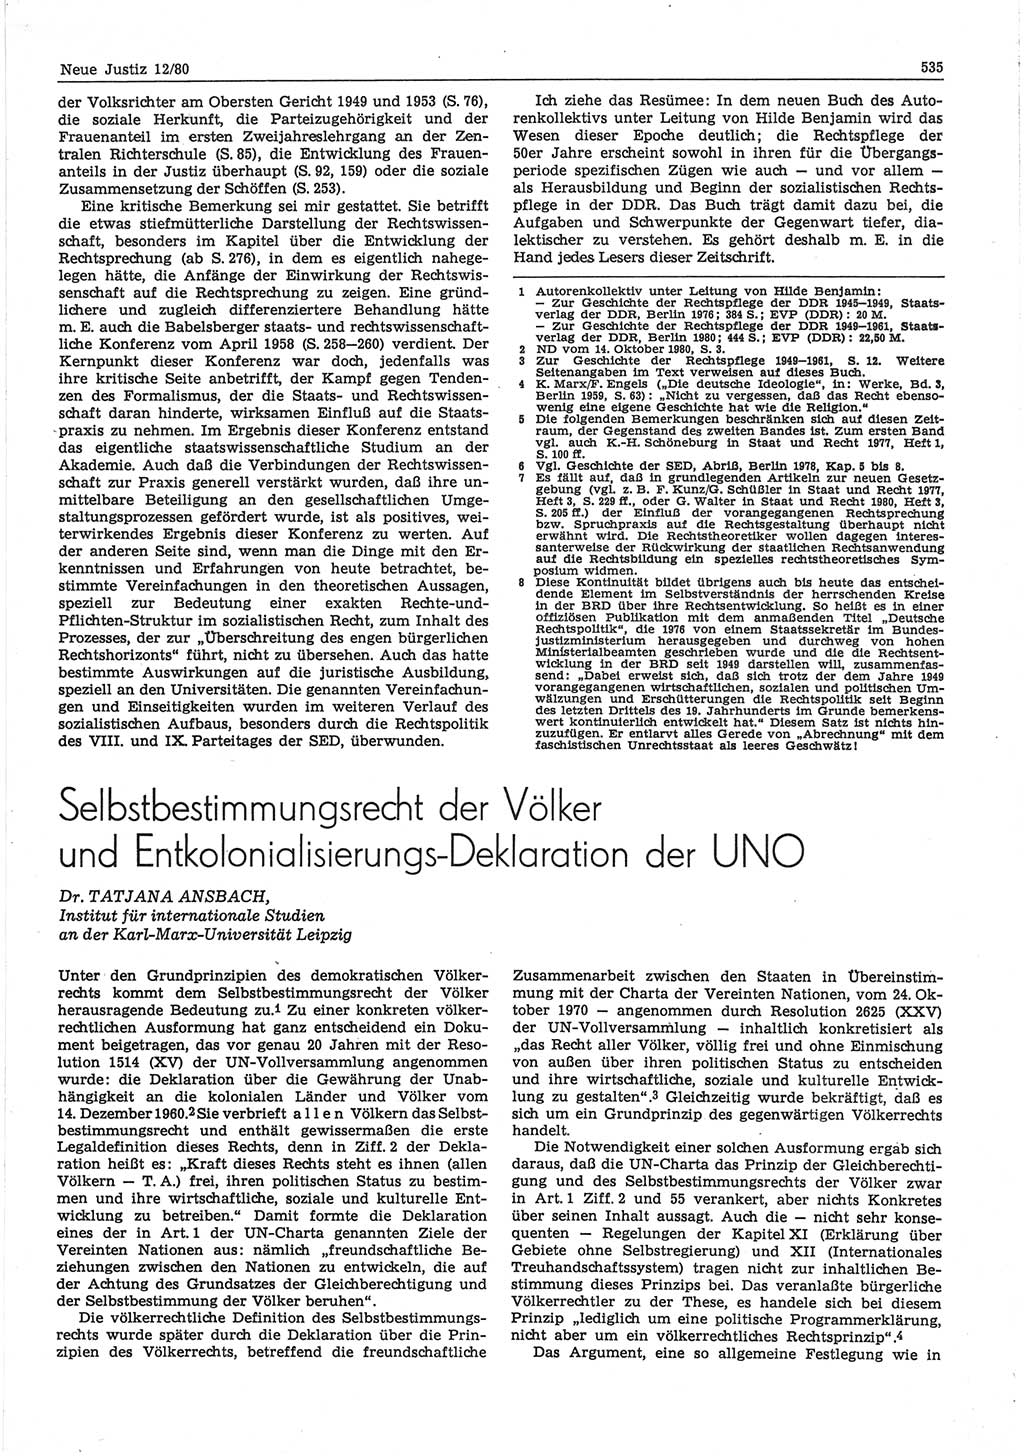 Neue Justiz (NJ), Zeitschrift für sozialistisches Recht und Gesetzlichkeit [Deutsche Demokratische Republik (DDR)], 34. Jahrgang 1980, Seite 535 (NJ DDR 1980, S. 535)